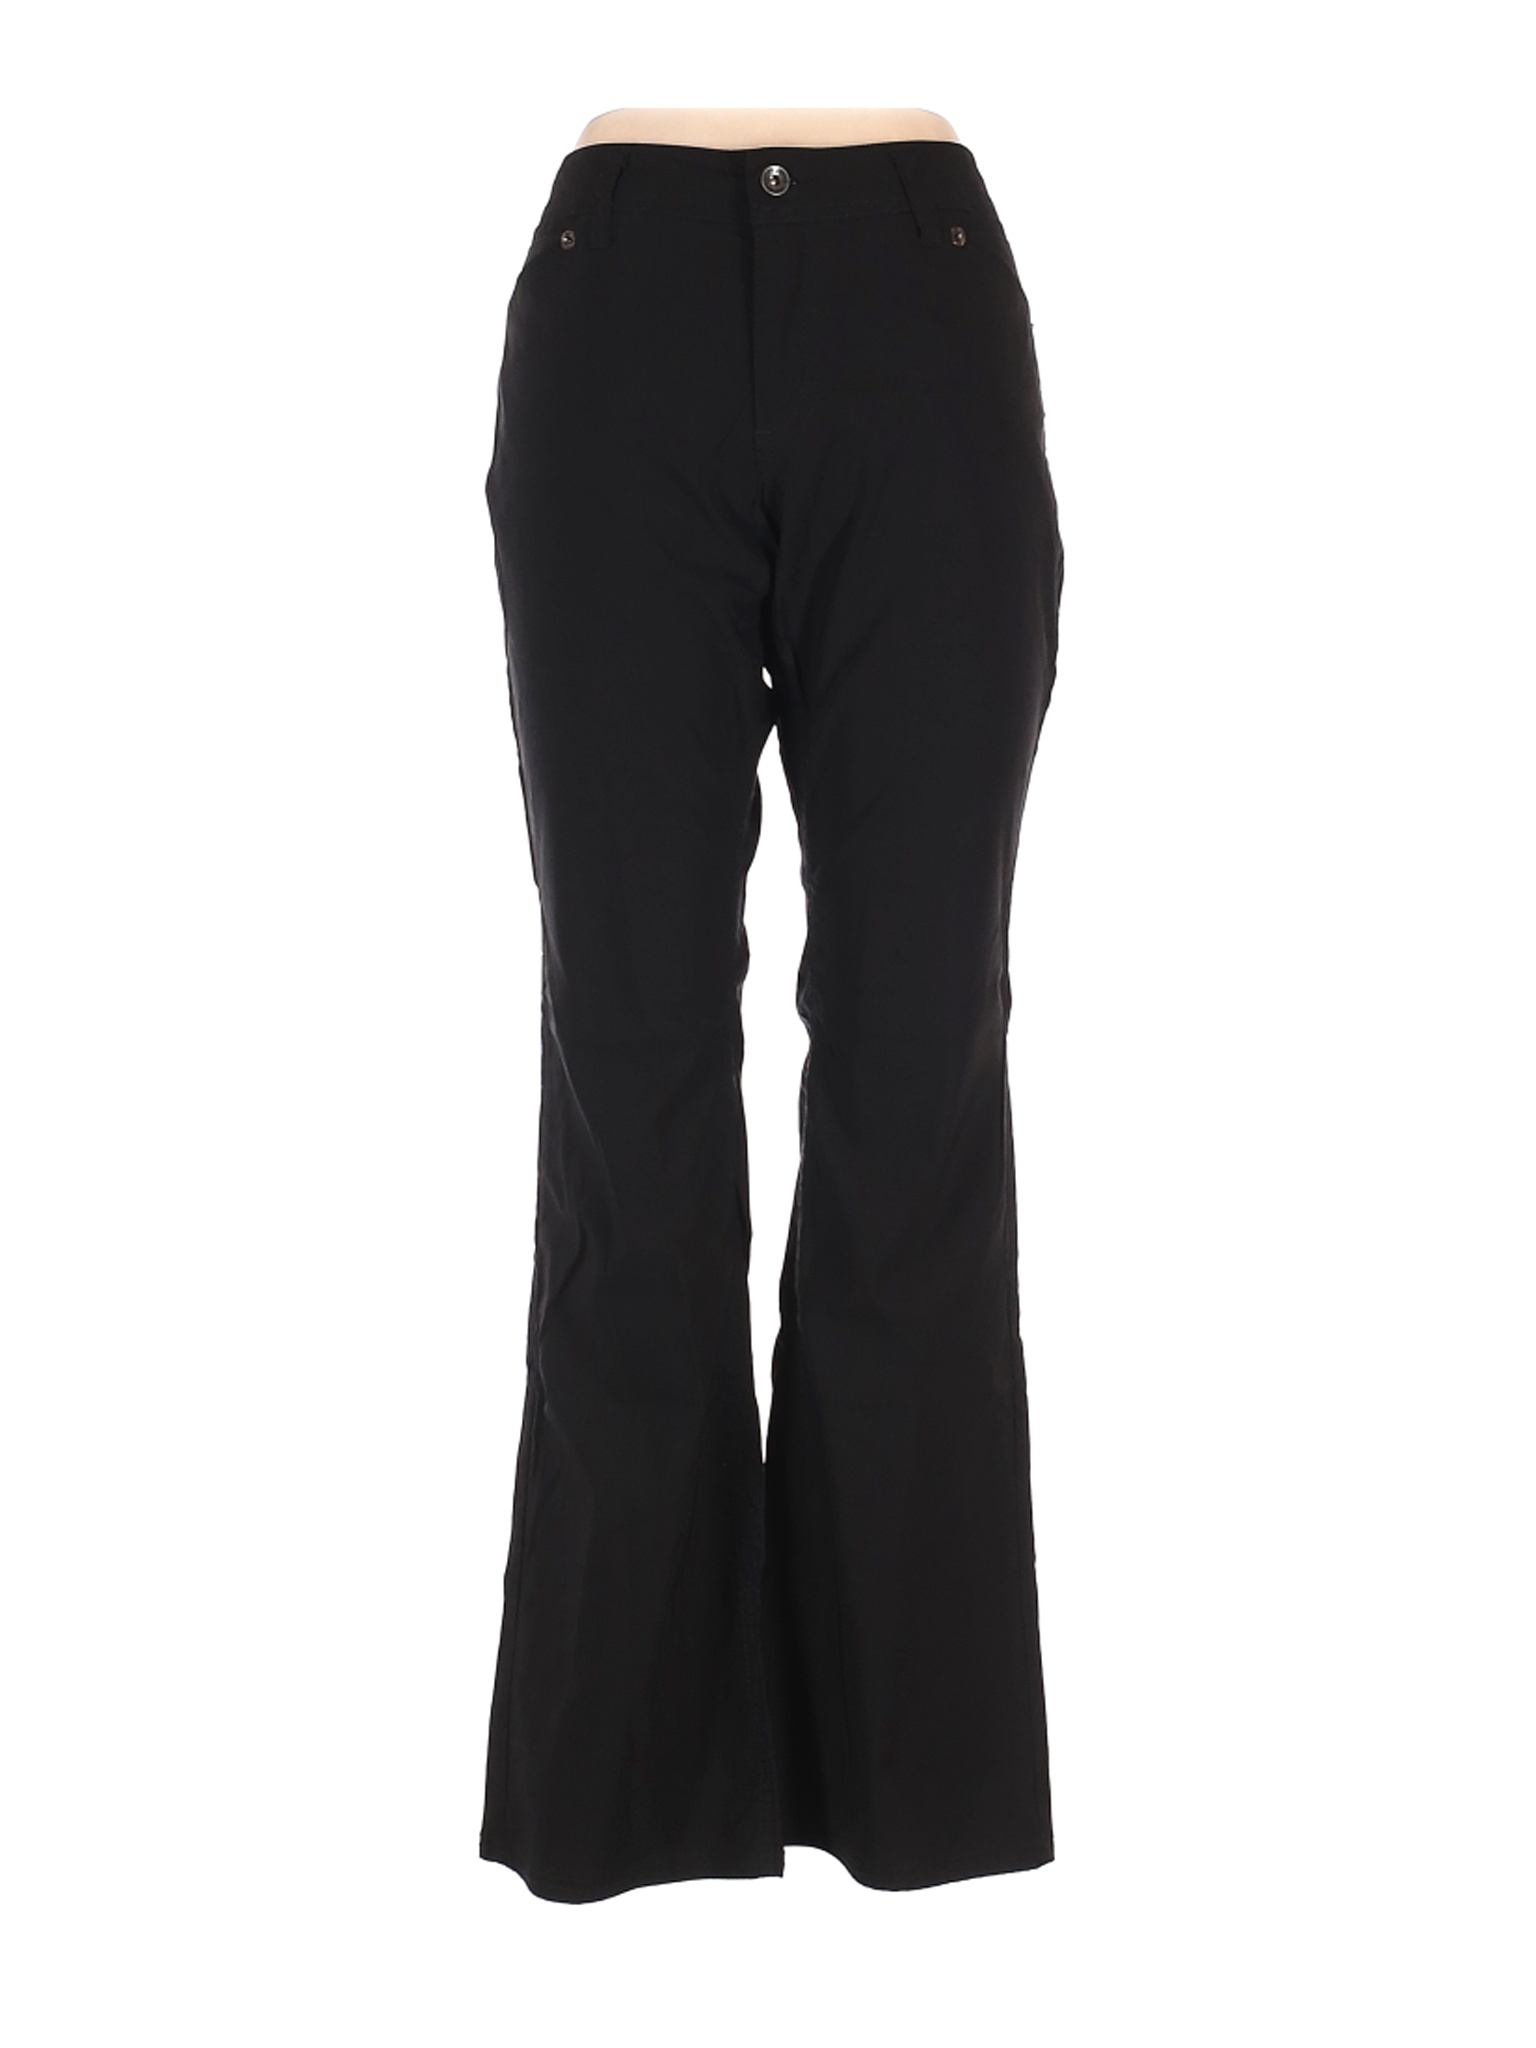 DKNY Jeans Women Black Casual Pants 12 | eBay